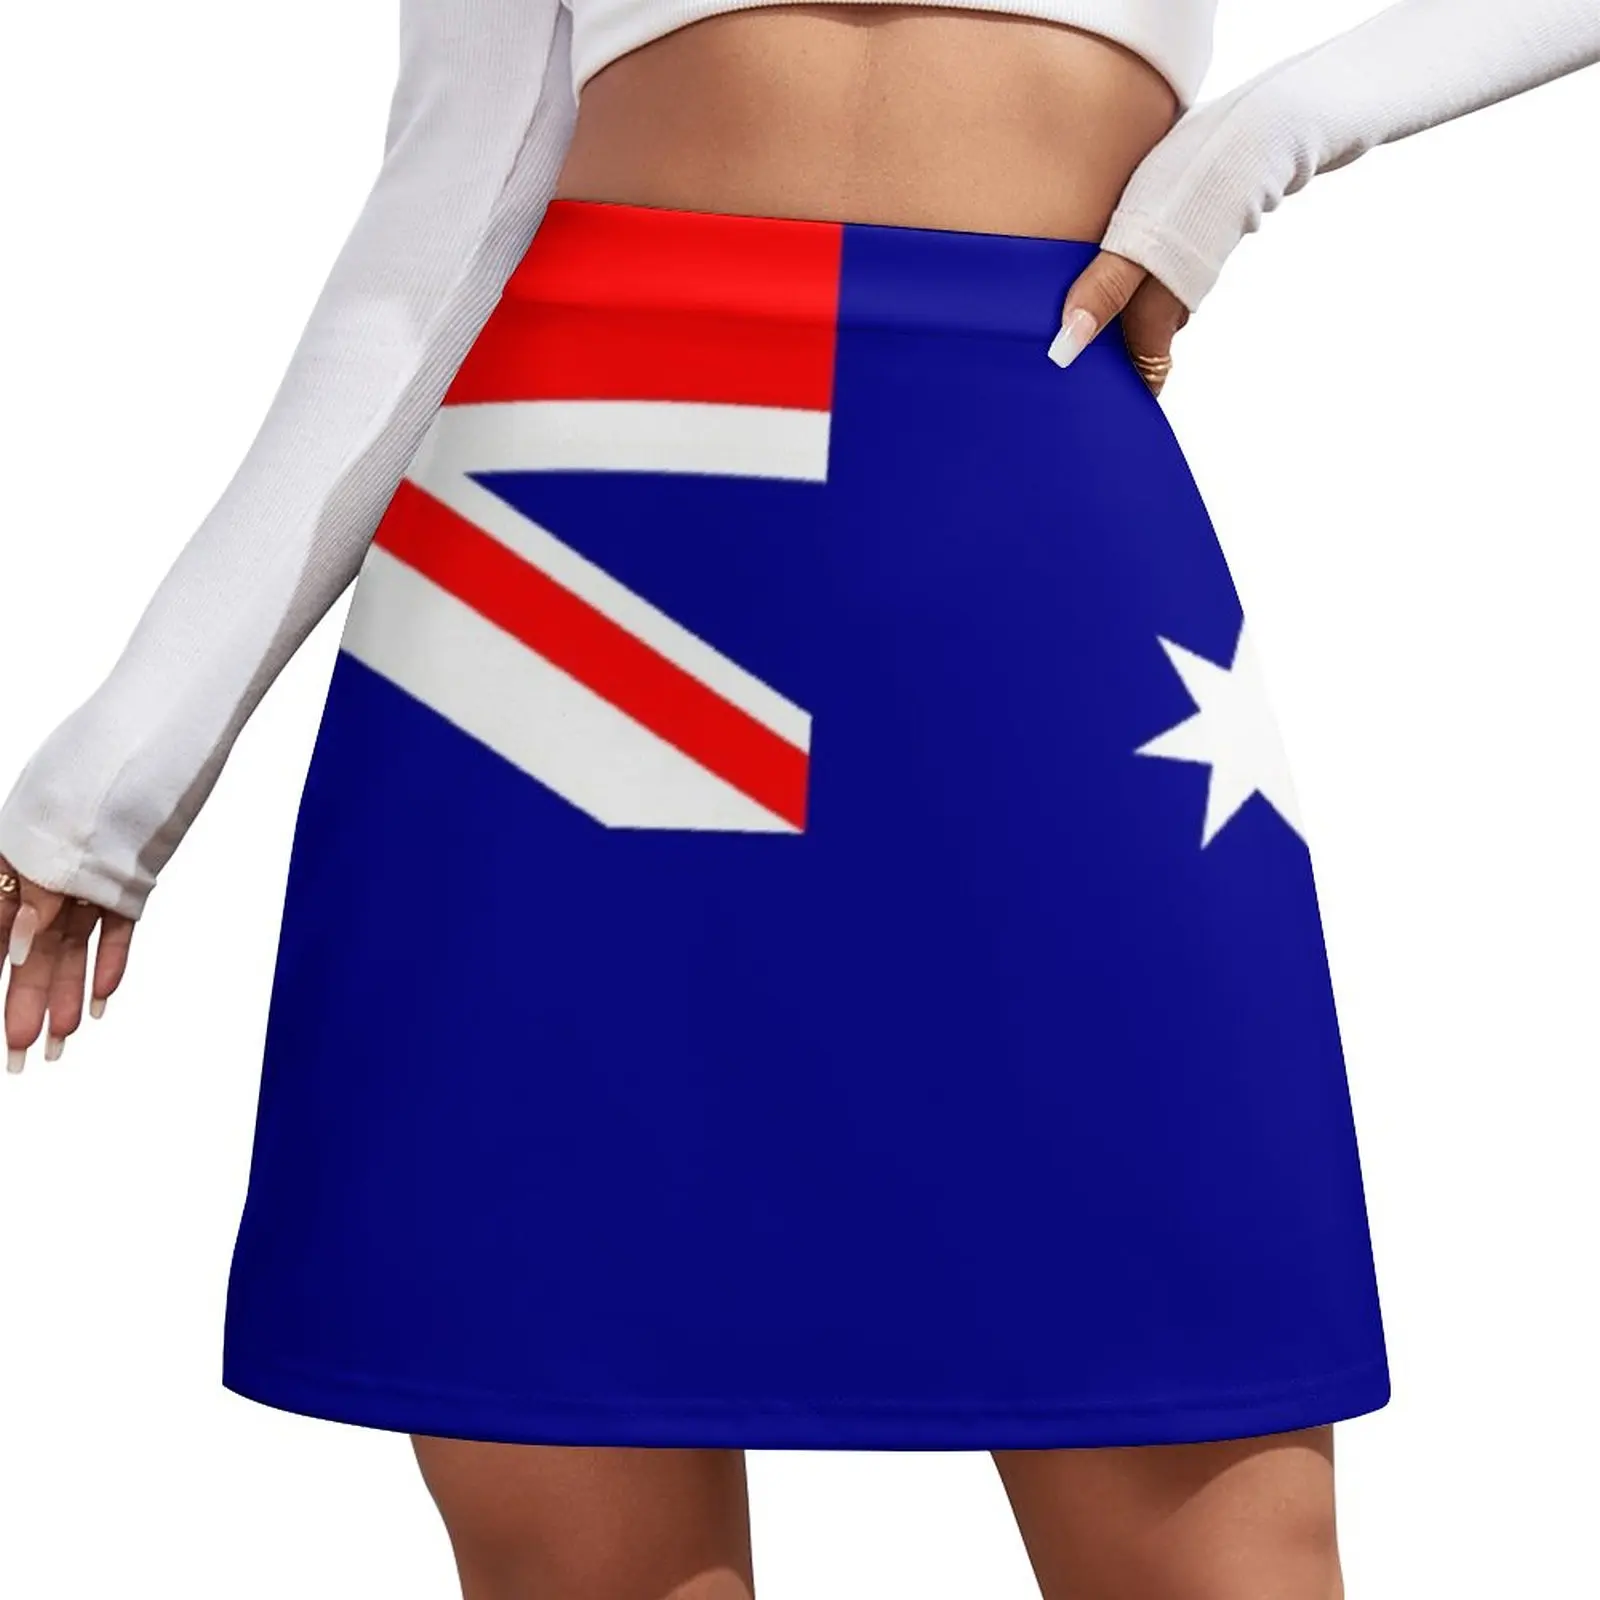 Flag of Australia - Australian Flag - I Love Australia Mini Skirt new in dresses Skirt for girls korean style mini dresses american flag ruffled hollow out mini dress in multicolor size l m s